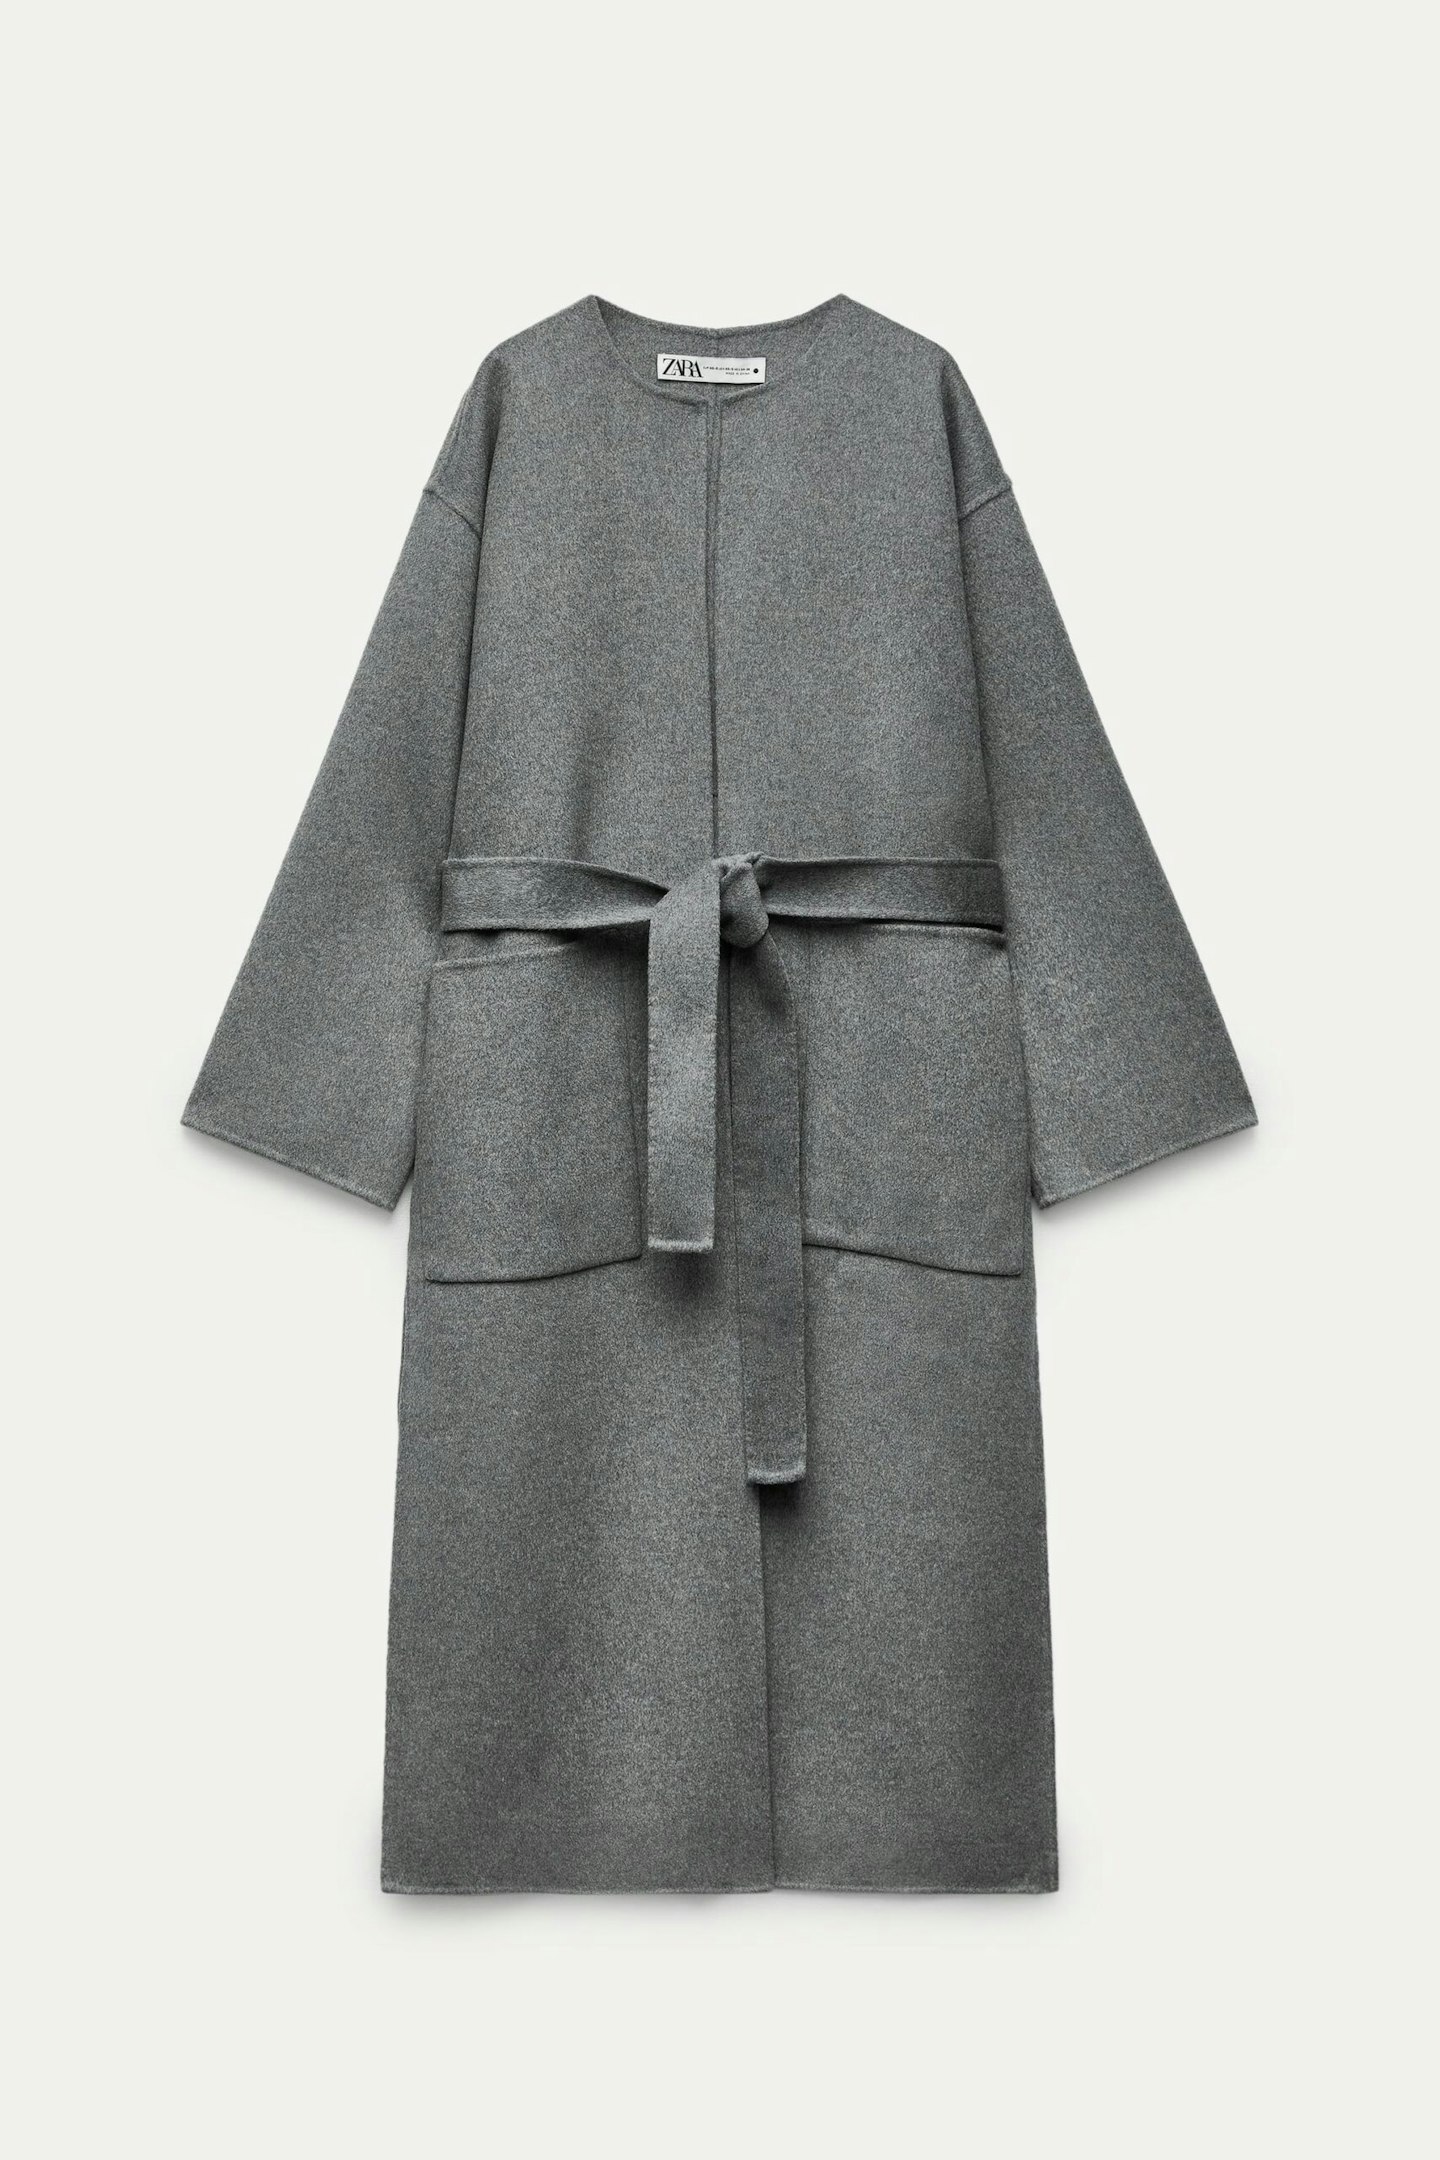 Zara, Double-Faced Wool-Blend Coat